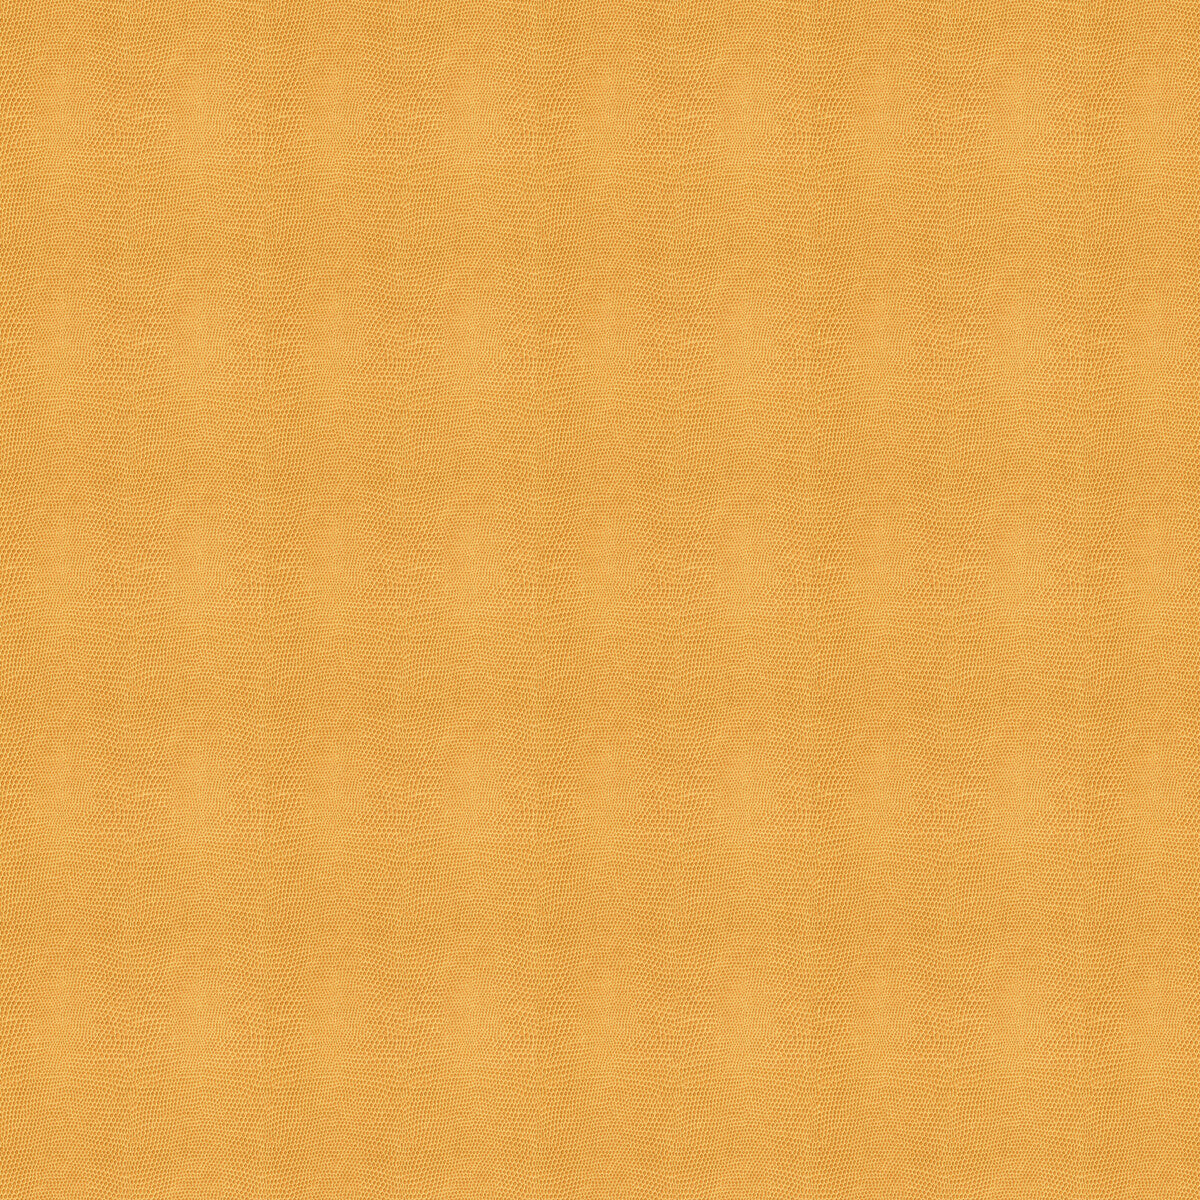 Kravet Design fabric in moccasin-1616 color - pattern MOCCASIN.1616.0 - by Kravet Design